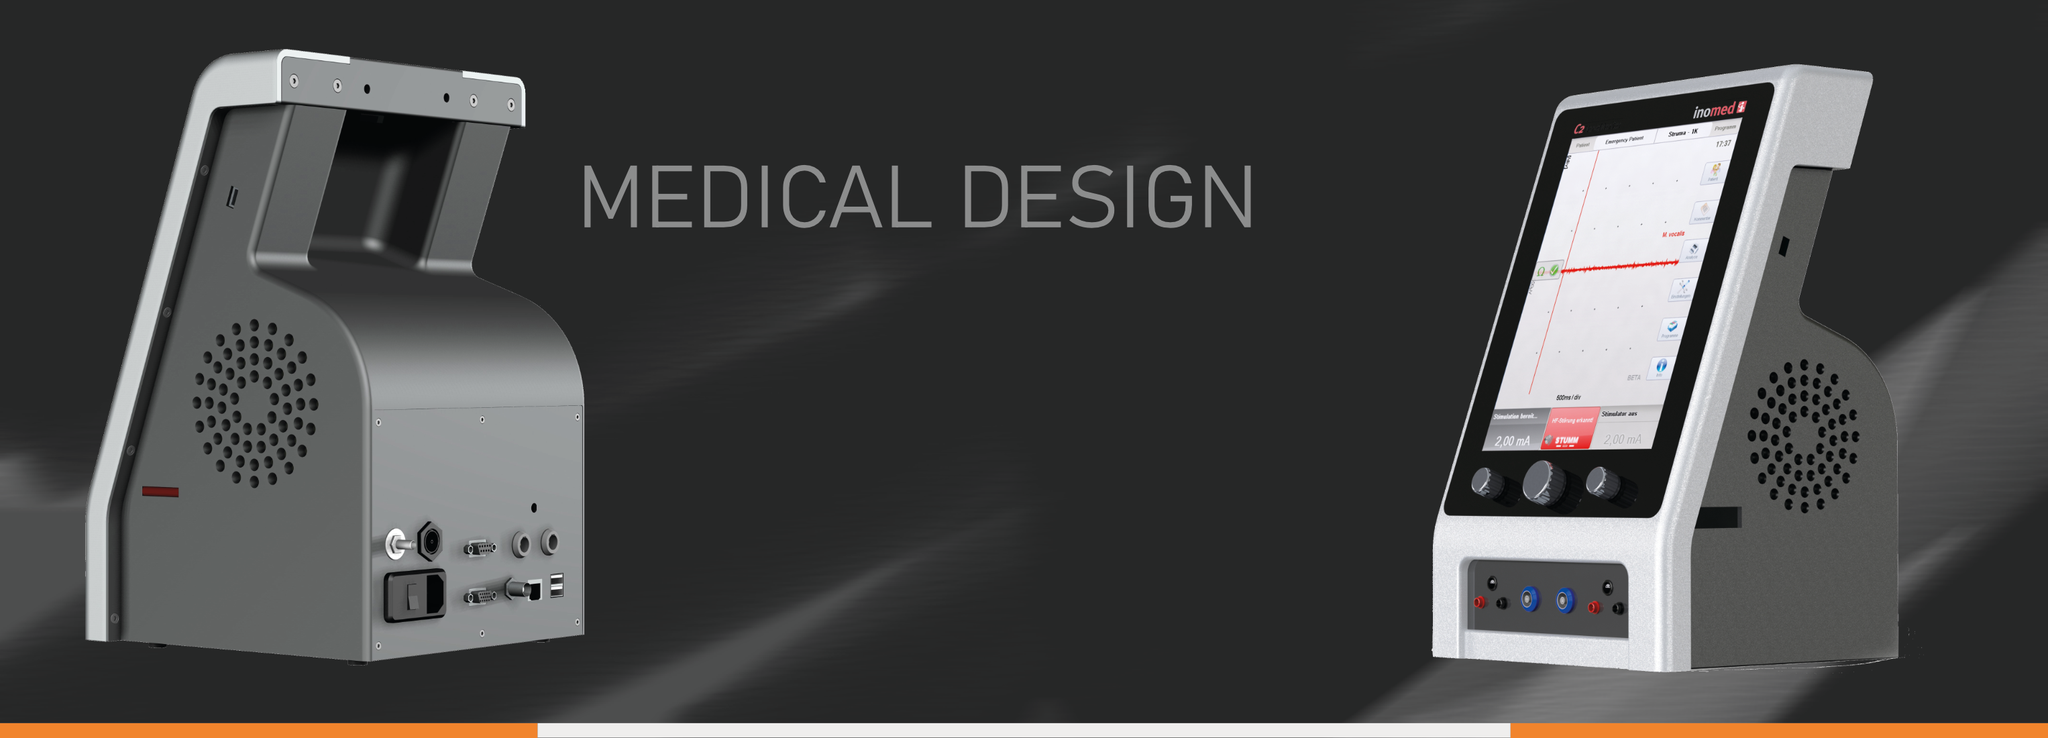 Design für Medizinprodukte, medical Design